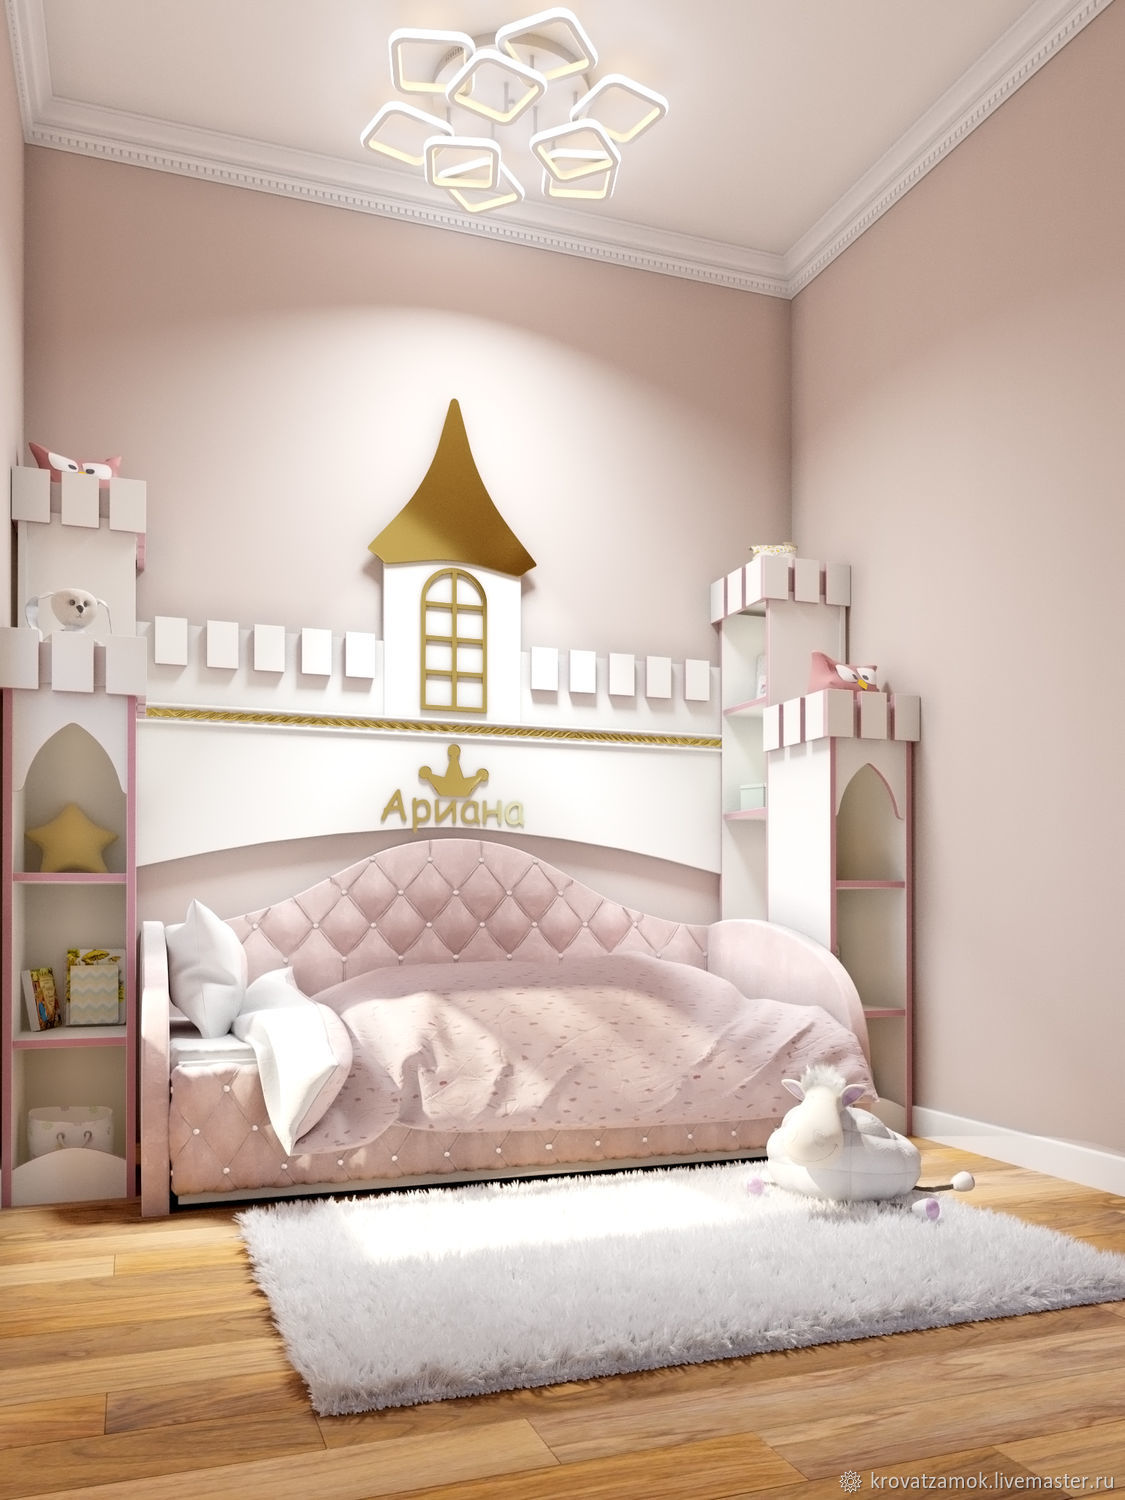 Кукольный домик для маленькой принцессы